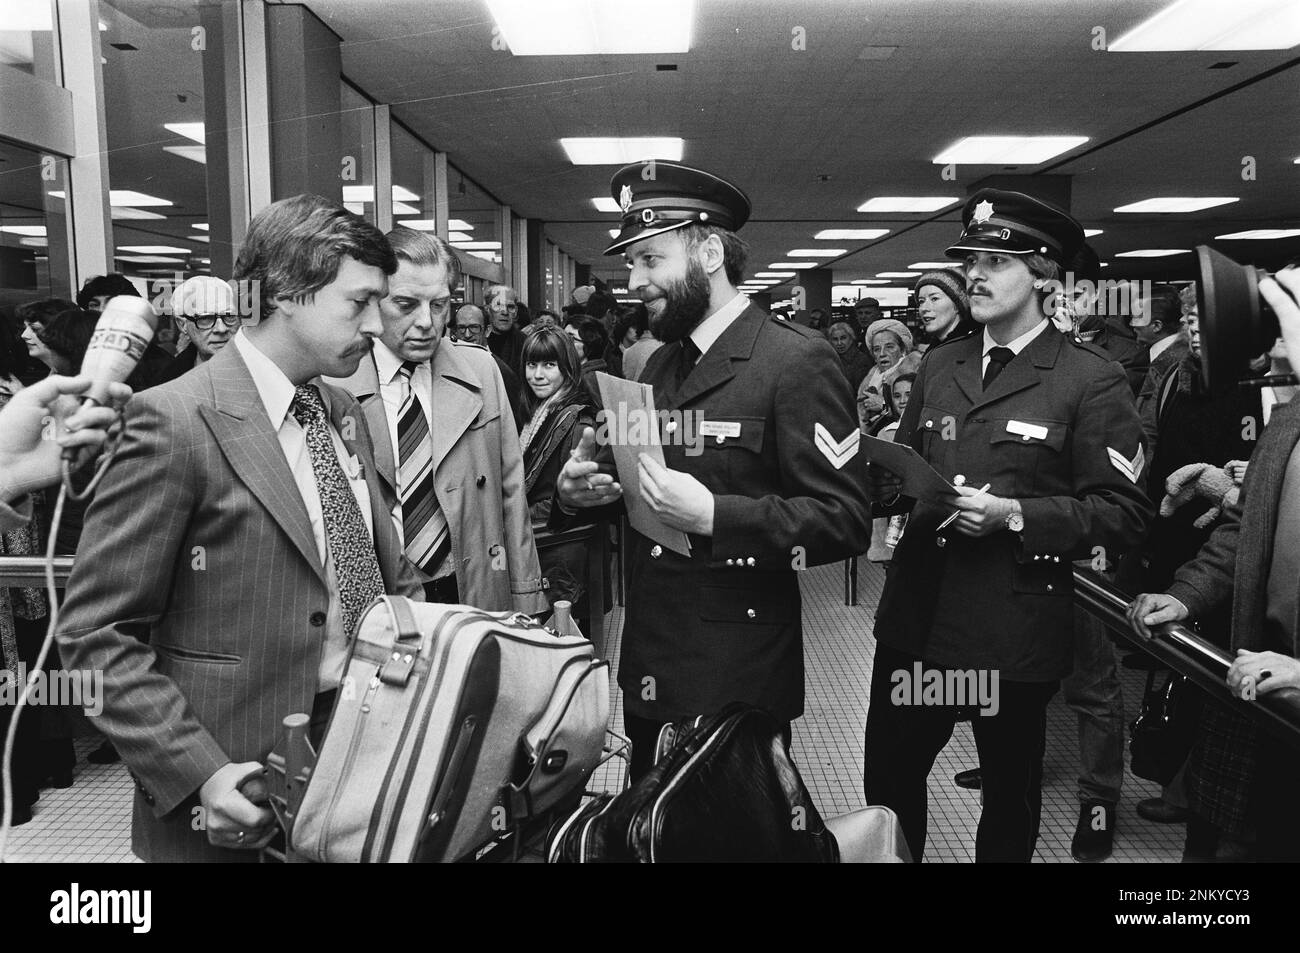 Pays-Bas Histoire: Les homosexuels déguisés en officier de police interrogent les Américains à Schiphol (en raison de la réglementation aux États-Unis) ca. 10 janvier 1980 Banque D'Images